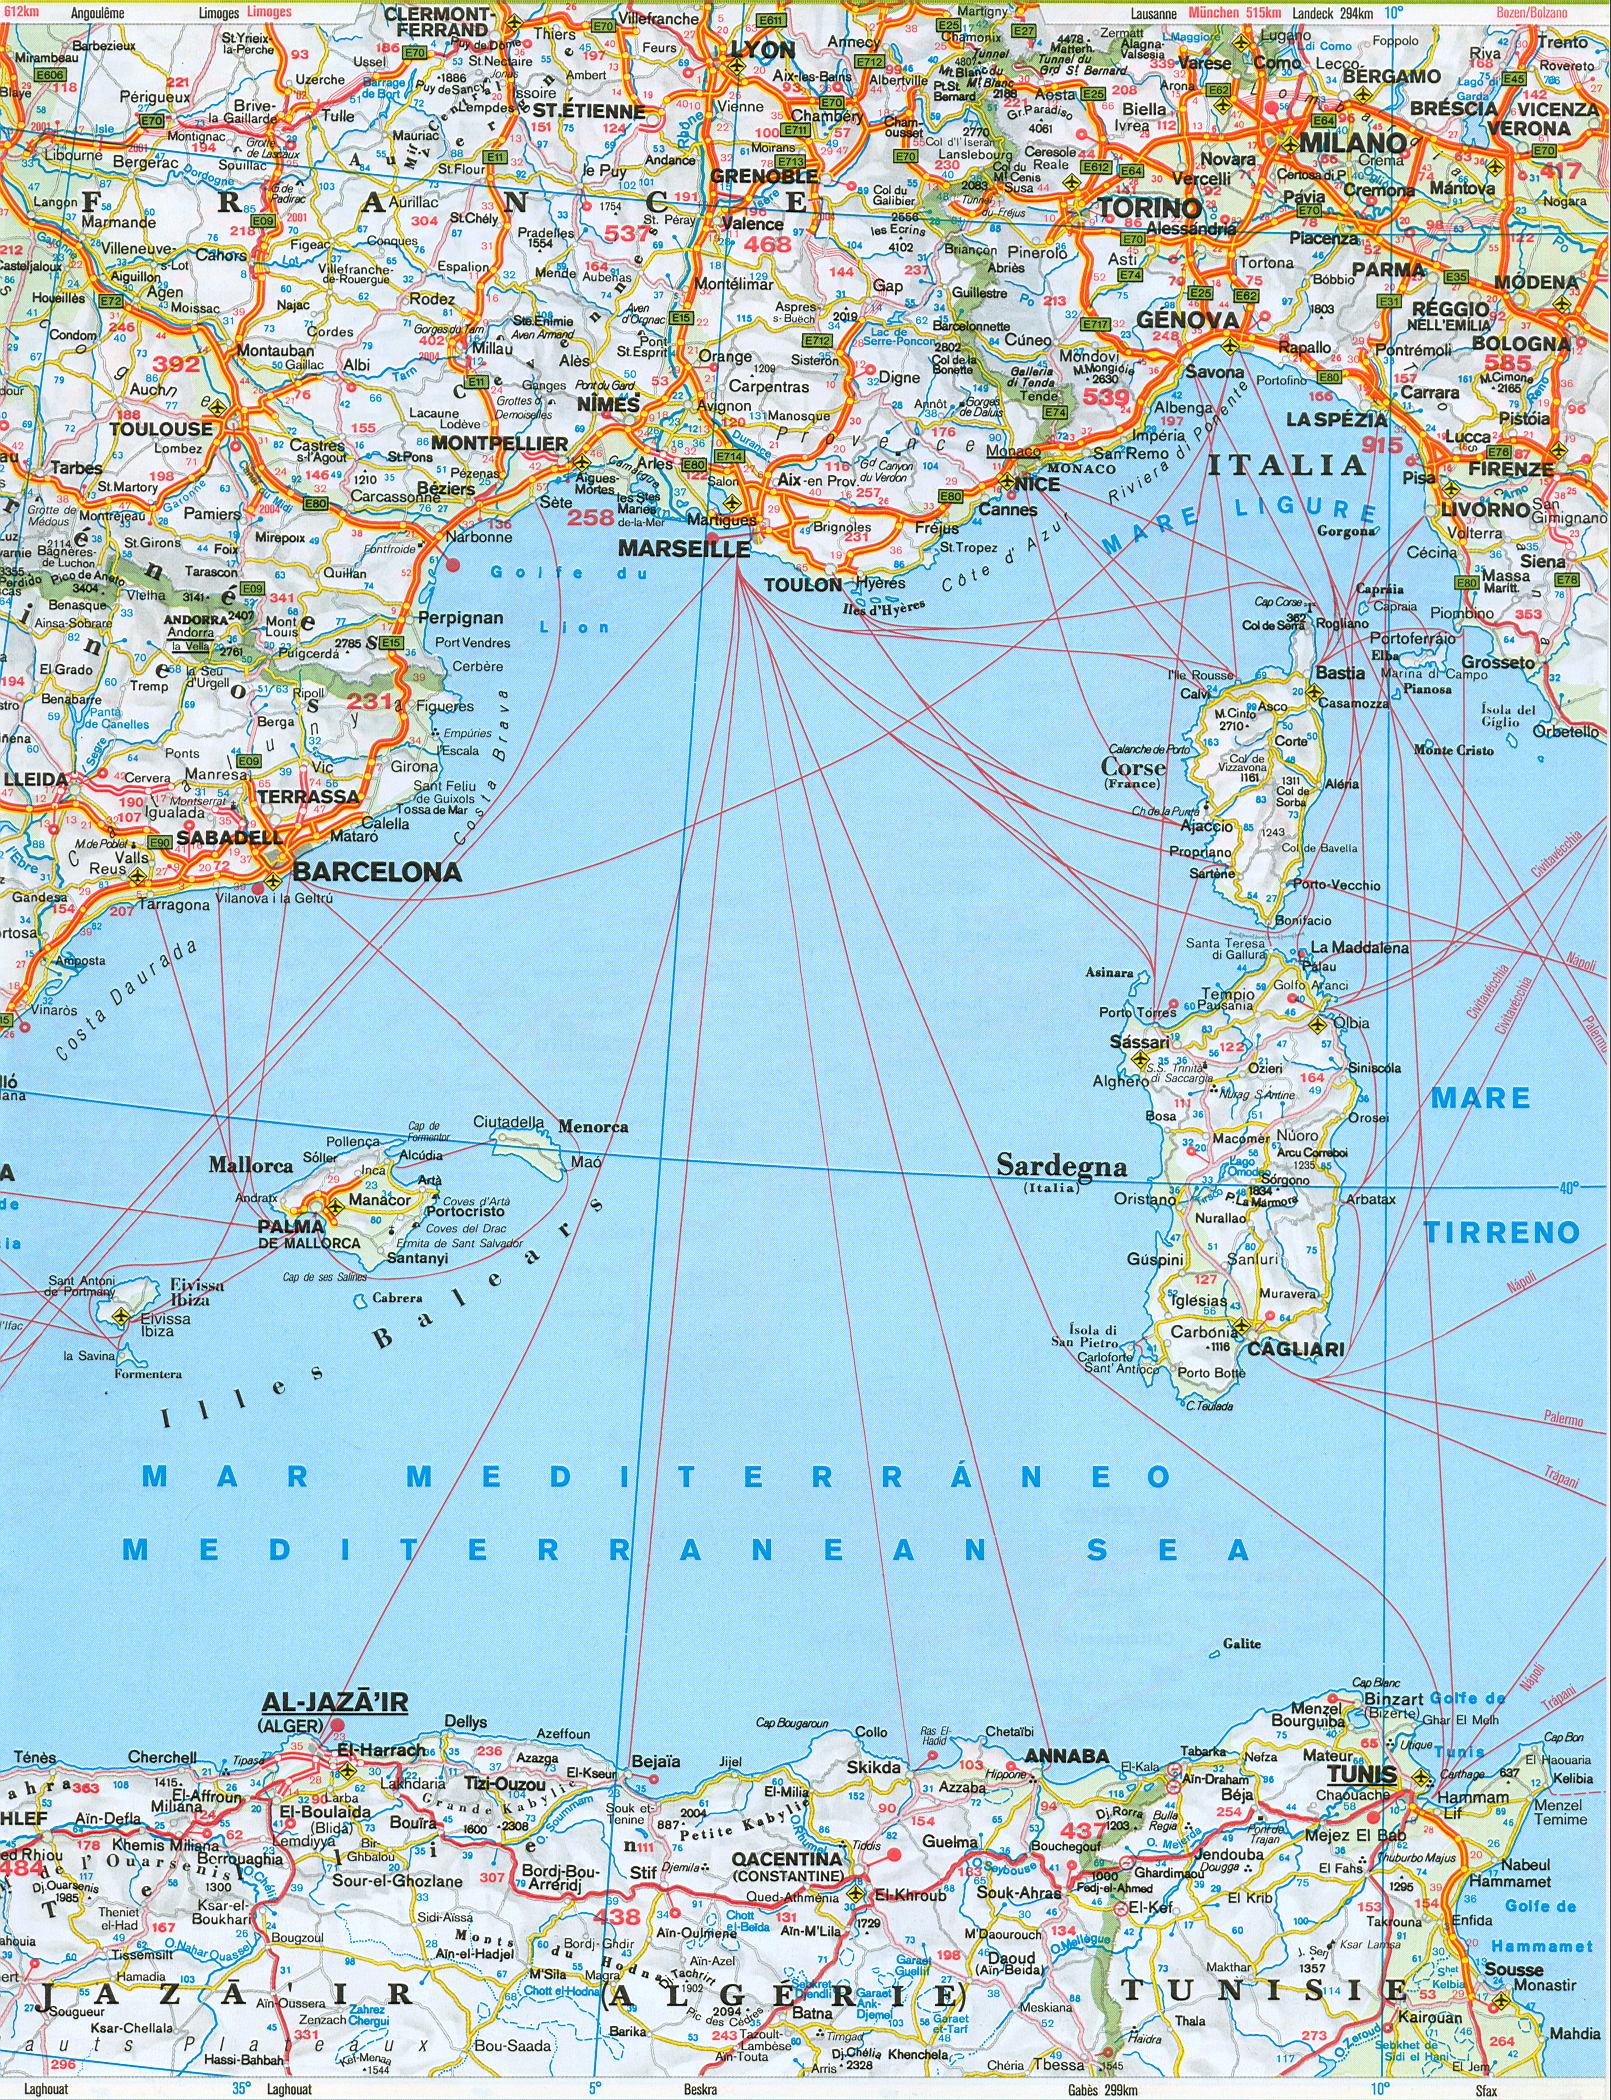  Карта дорог южной Европы. Подробная карта дорог южной Европы: Испания, Португалия, юг Франции . Скачать бесплатно, A0 - 